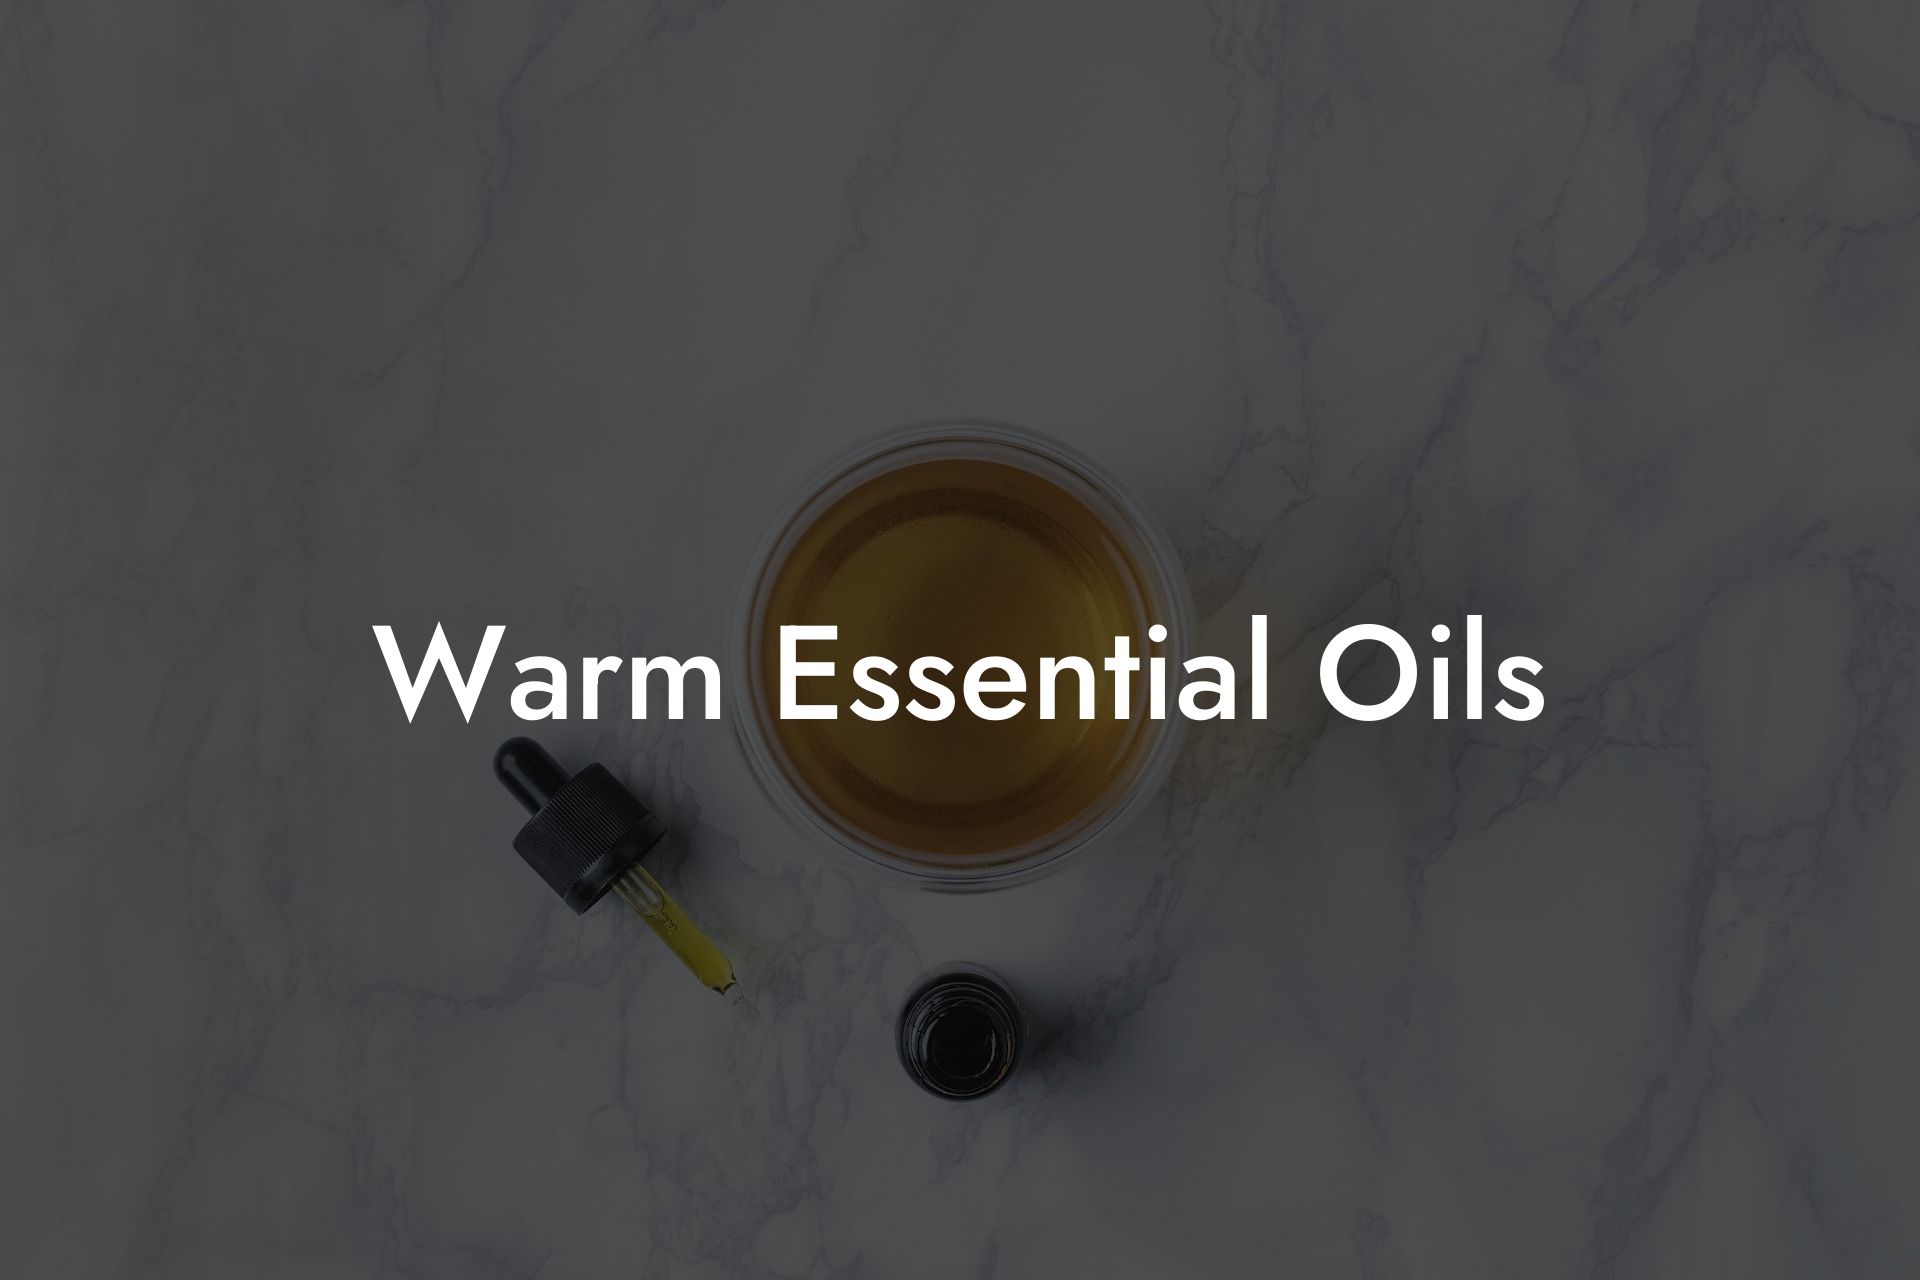 Warm Essential Oils